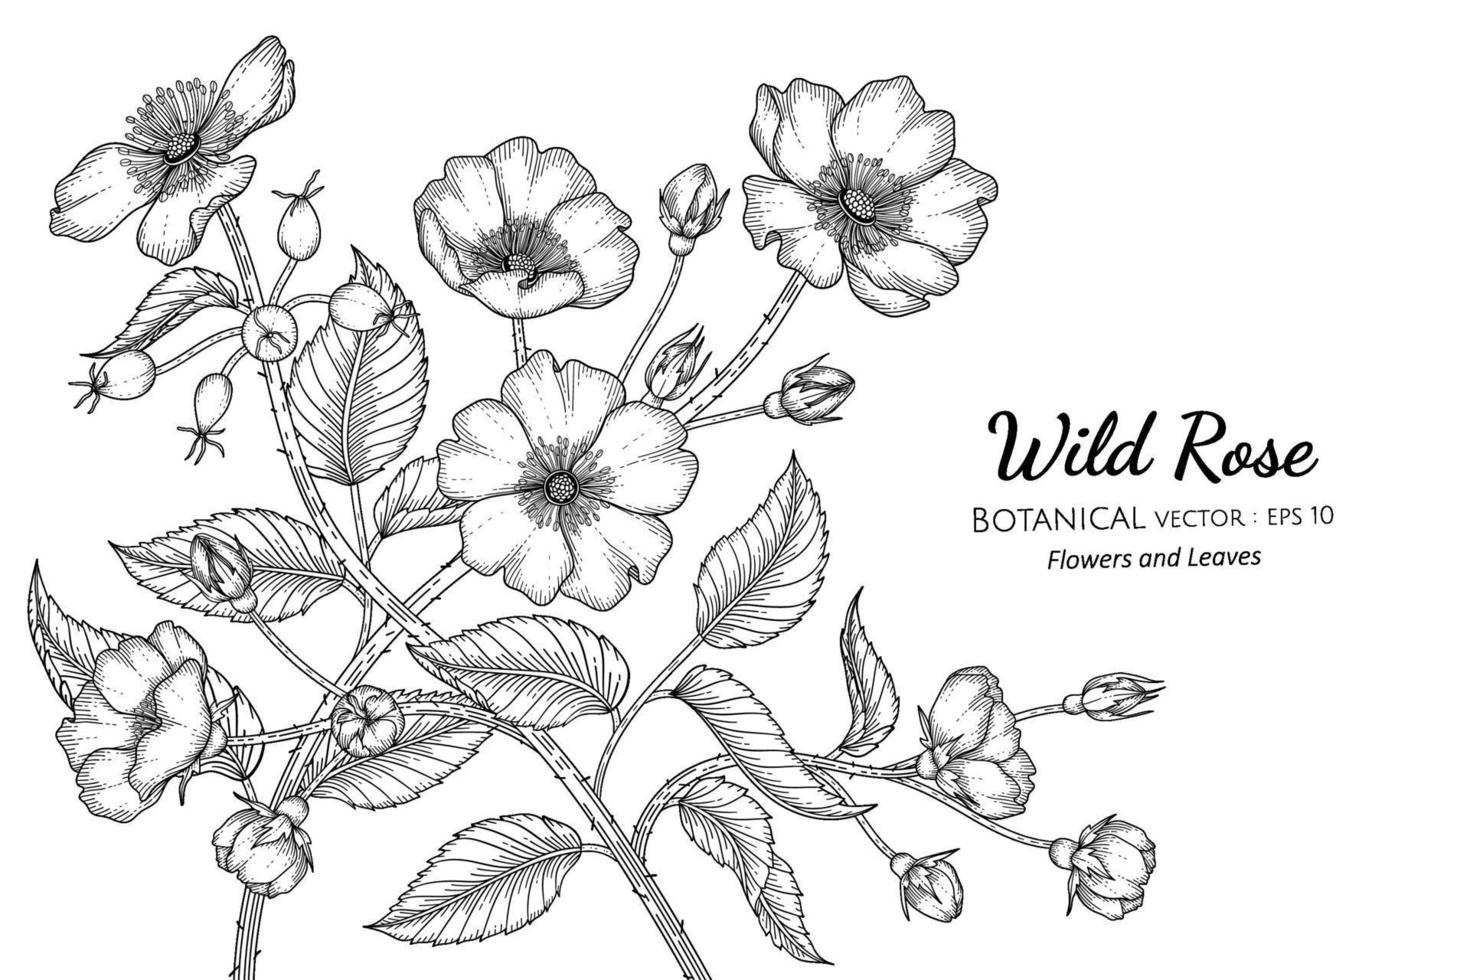 illustrazione botanica disegnata a mano del fiore e della foglia della rosa selvatica con disegni al tratto su sfondi bianchi. vettore